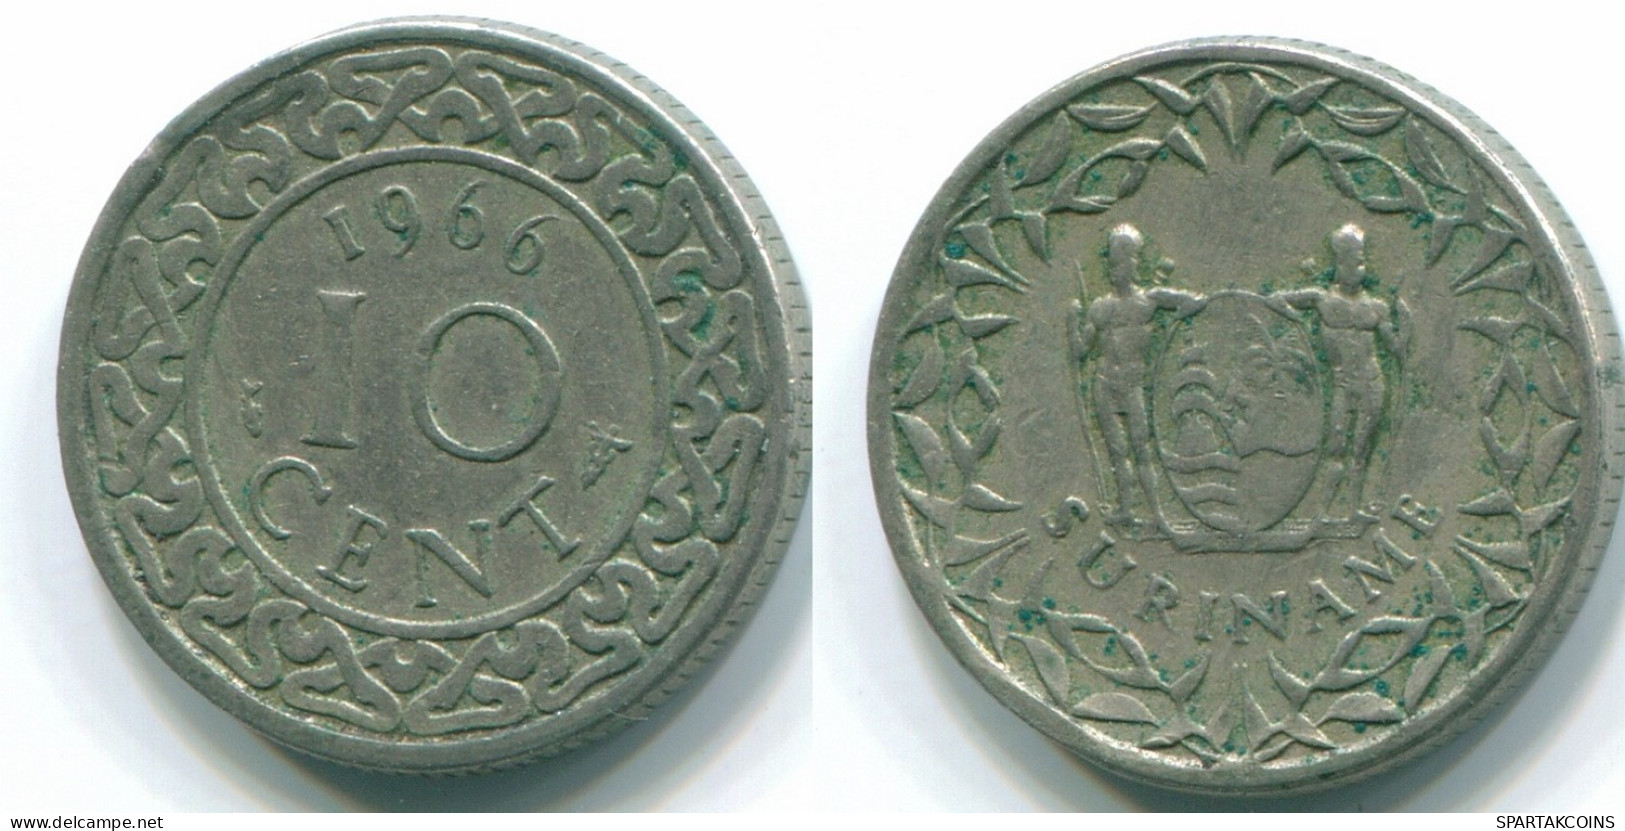 10 CENTS 1966 SURINAME NEERLANDÉS NETHERLANDS Nickel Colonial Moneda #S13255.E.A - Surinam 1975 - ...